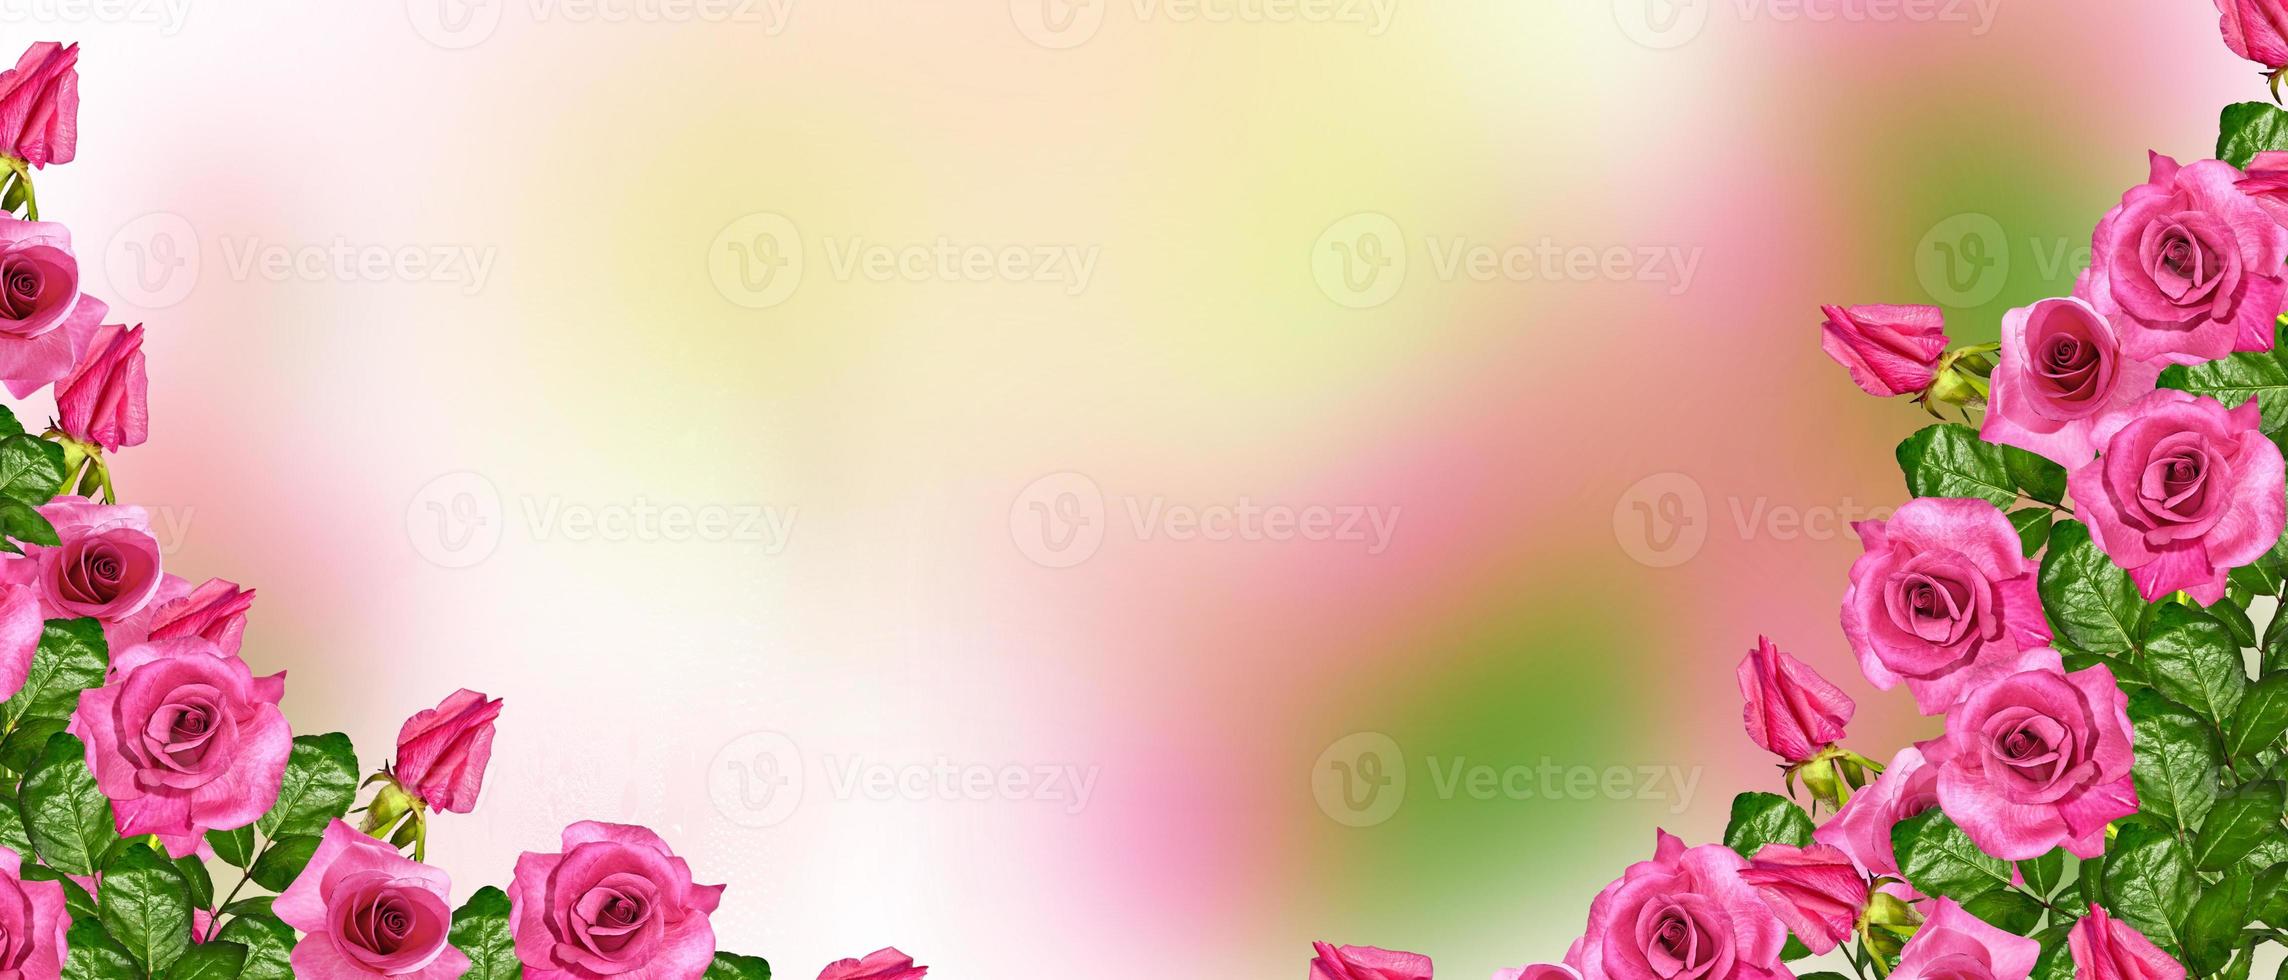 os botões de flores rosas. foto